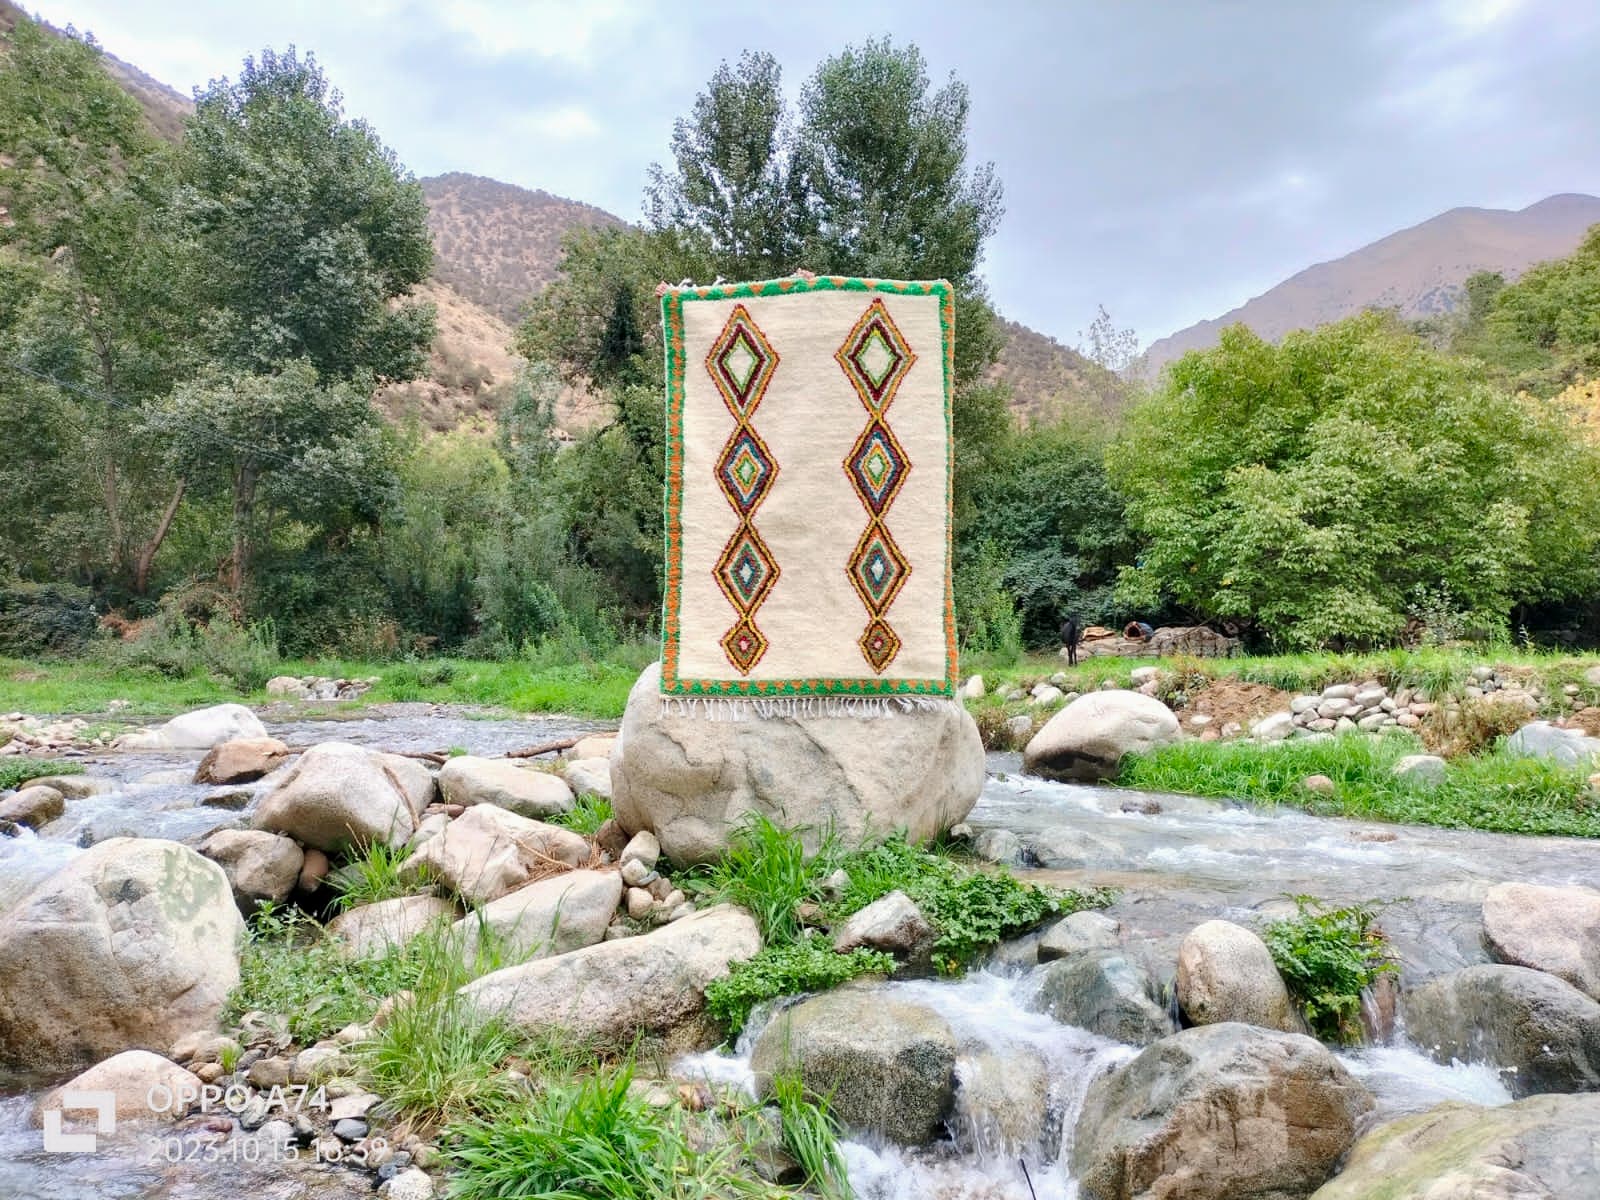  Handmade pileknot rug  Colored Morocco